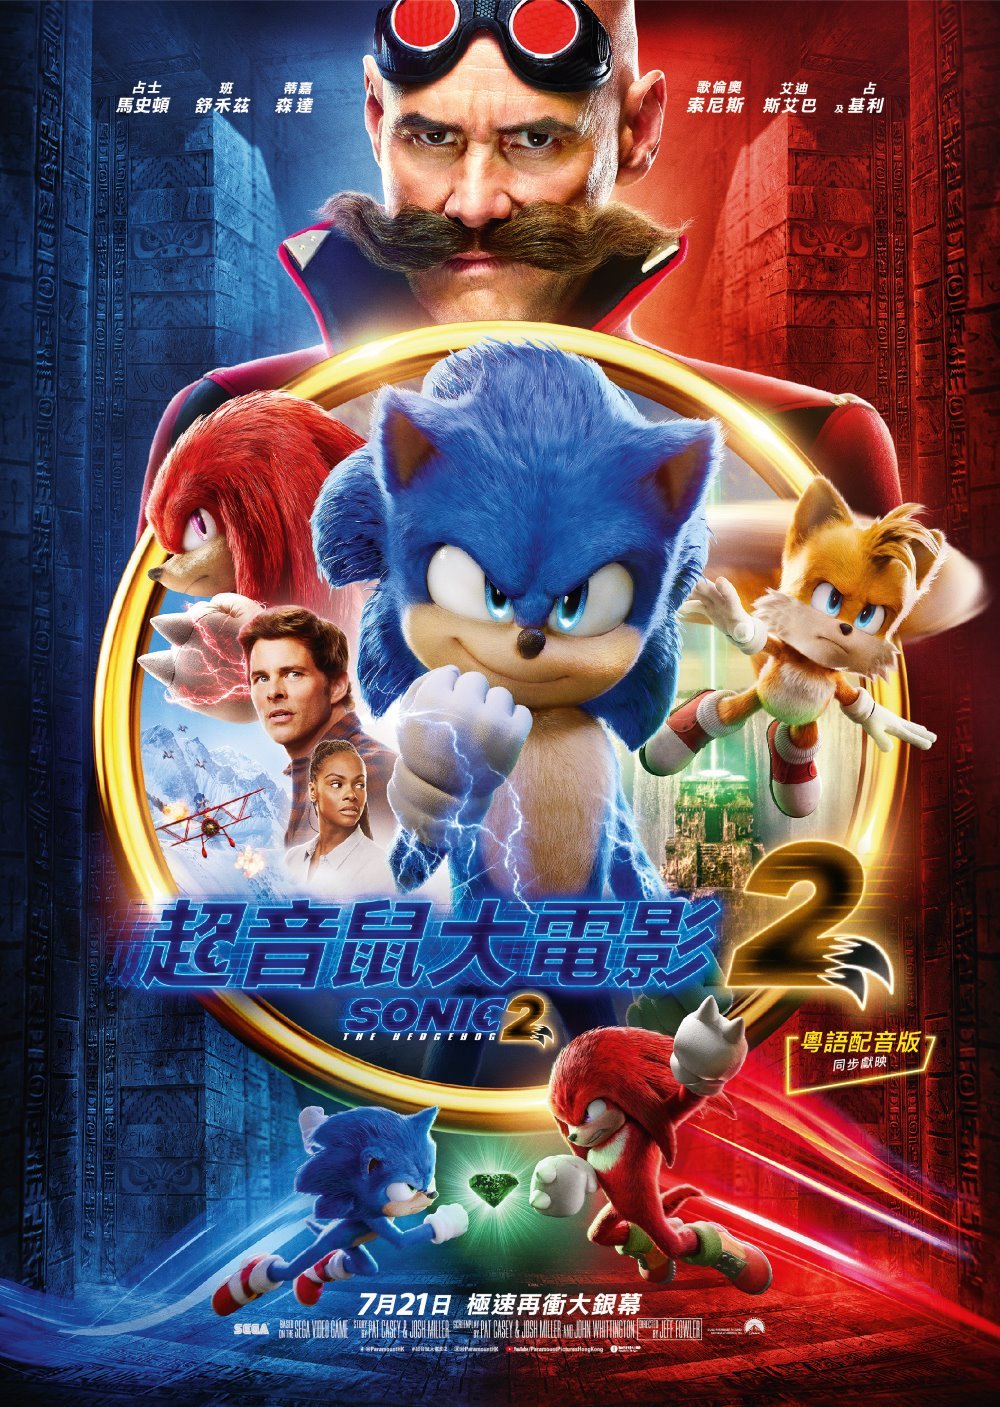 超音鼠大電影2 (粵語版)電影圖片 - Sonic2_Poster-01_1656922053.jpg